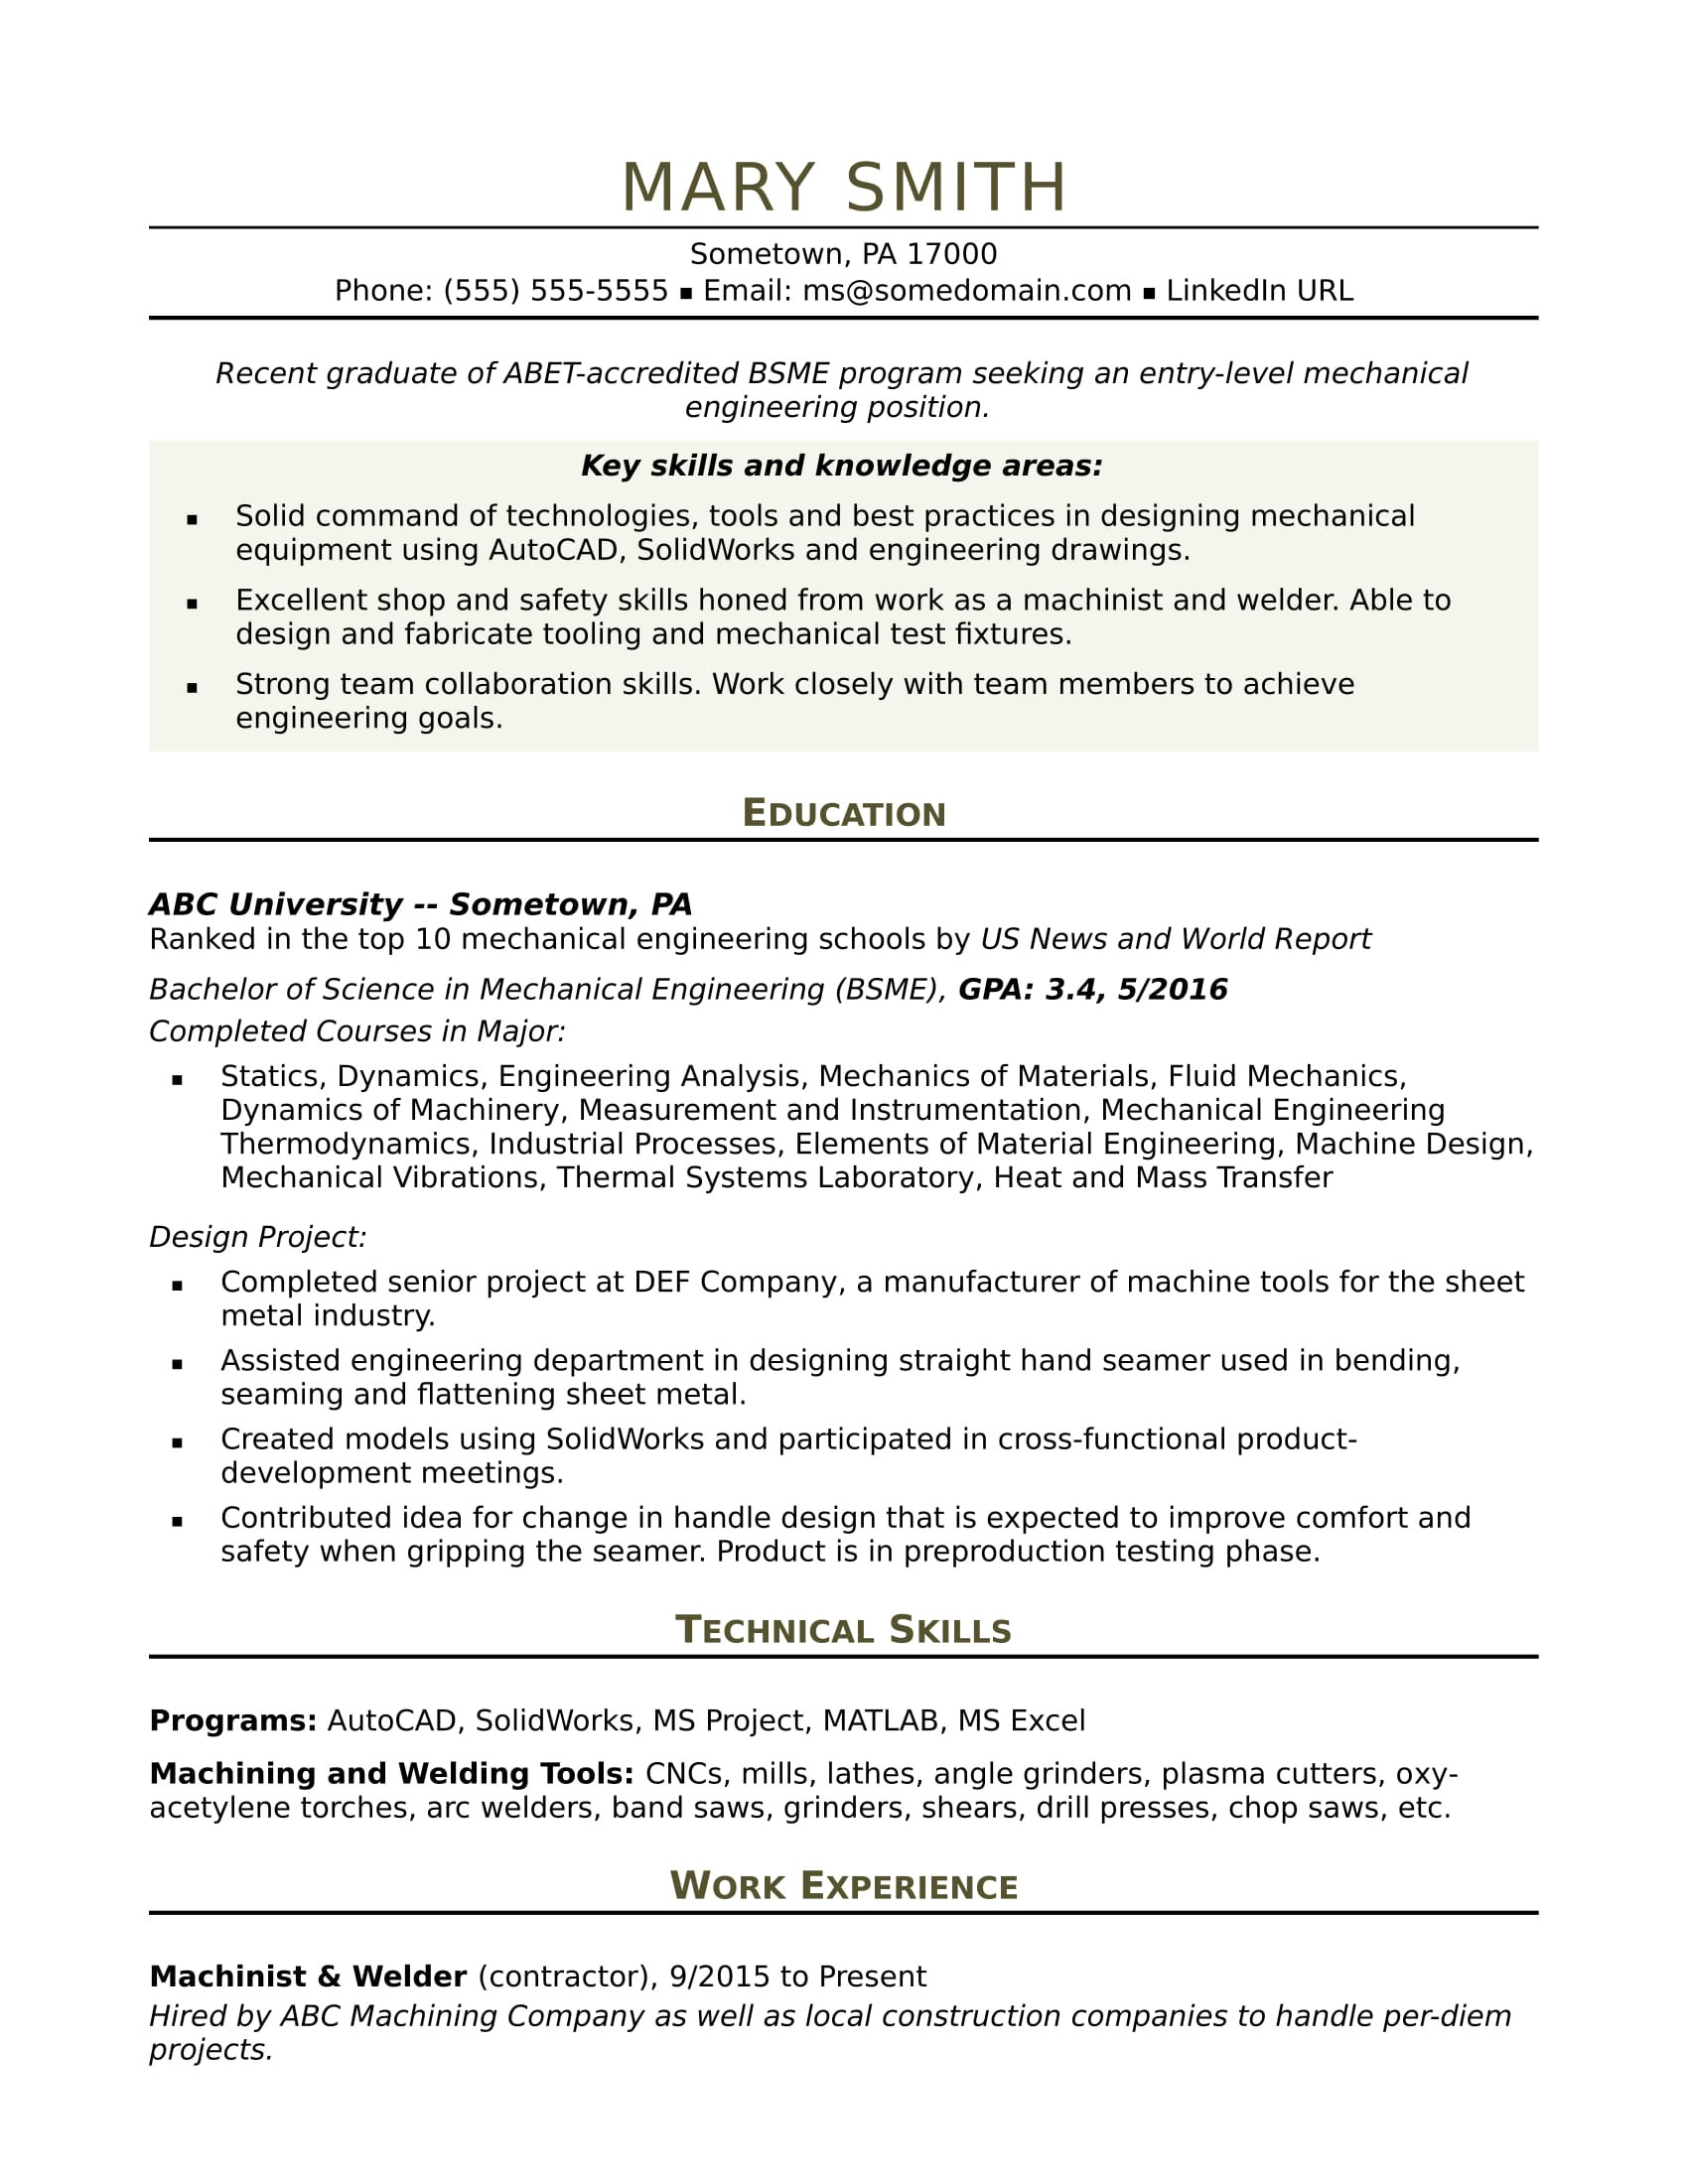 Sample Resume for Mechanical Engineer In Construction Sample Resume for An Entry Level Mechanical Engineer